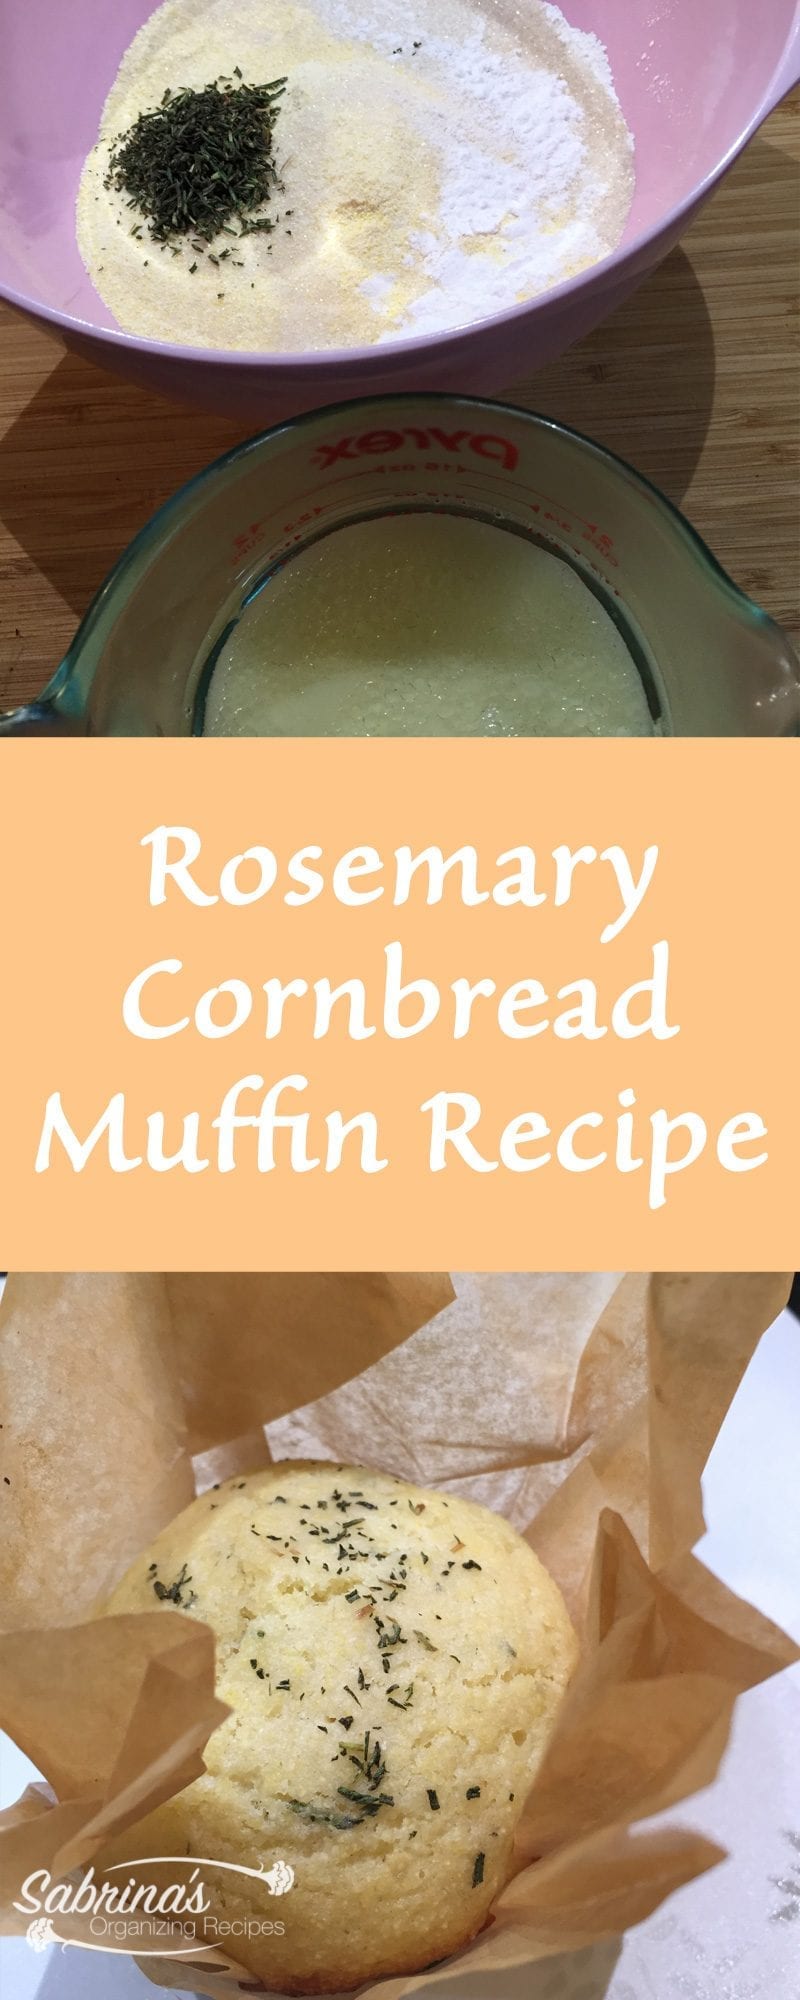 Rosemary Cornbread Muffin recipe